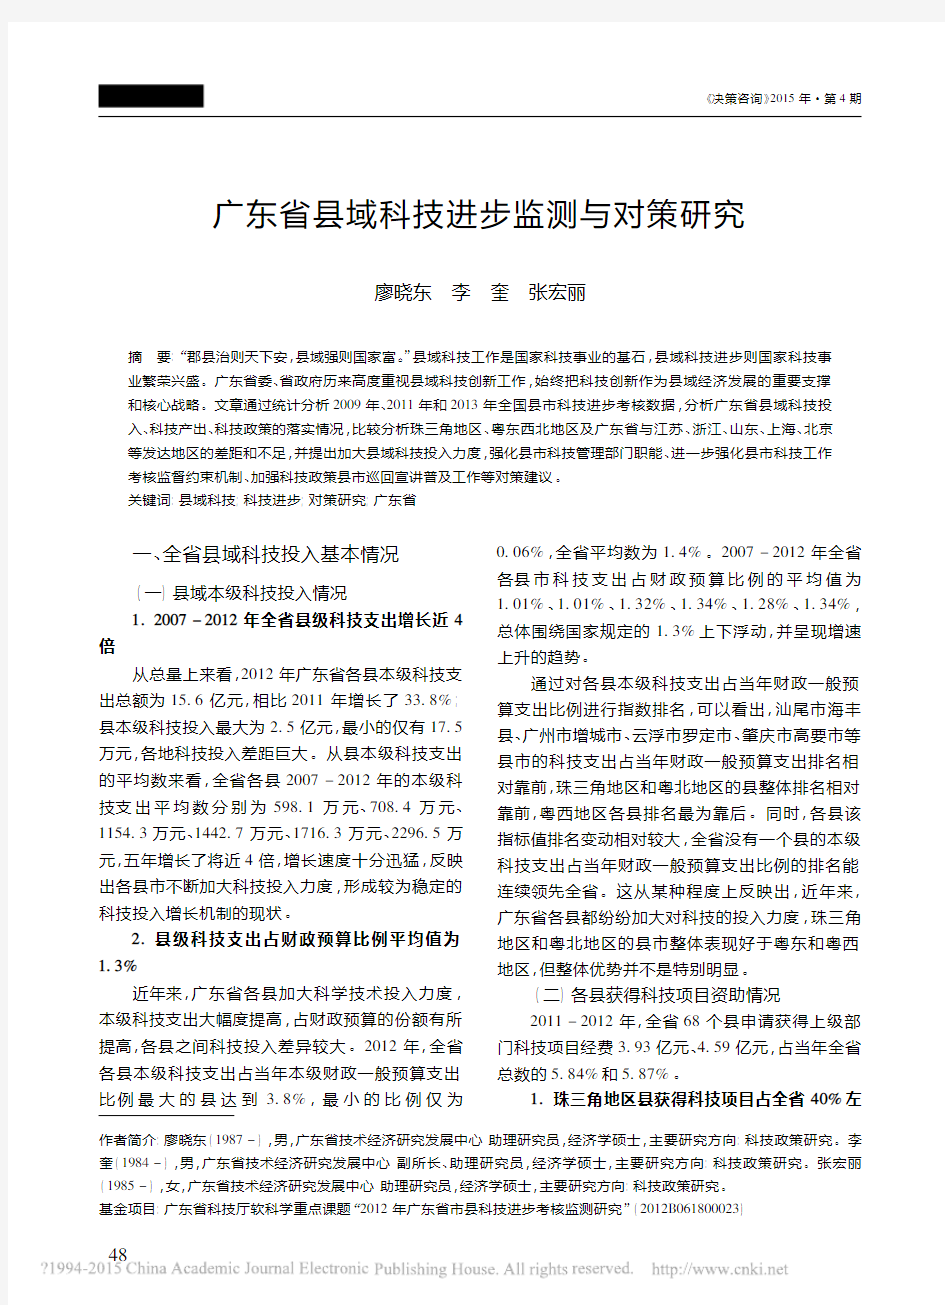 广东省县域科技进步监测与对策研究_廖晓东